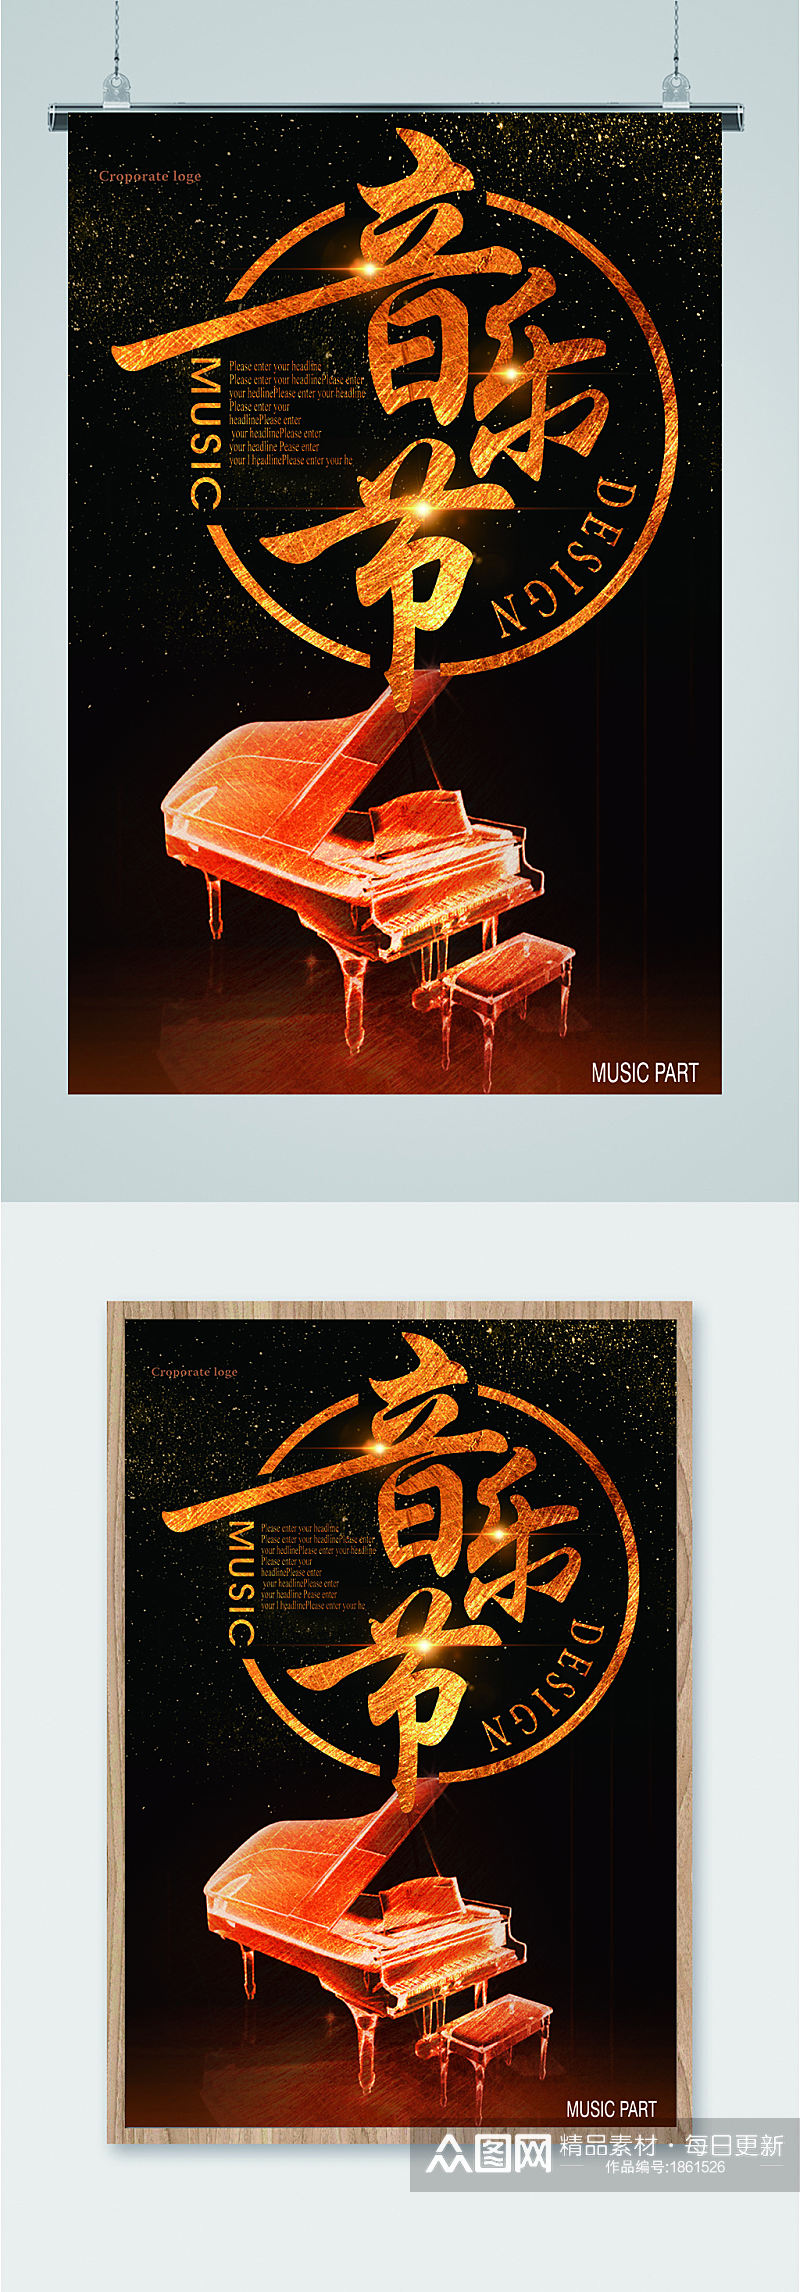 音乐节钢琴宣传海报素材